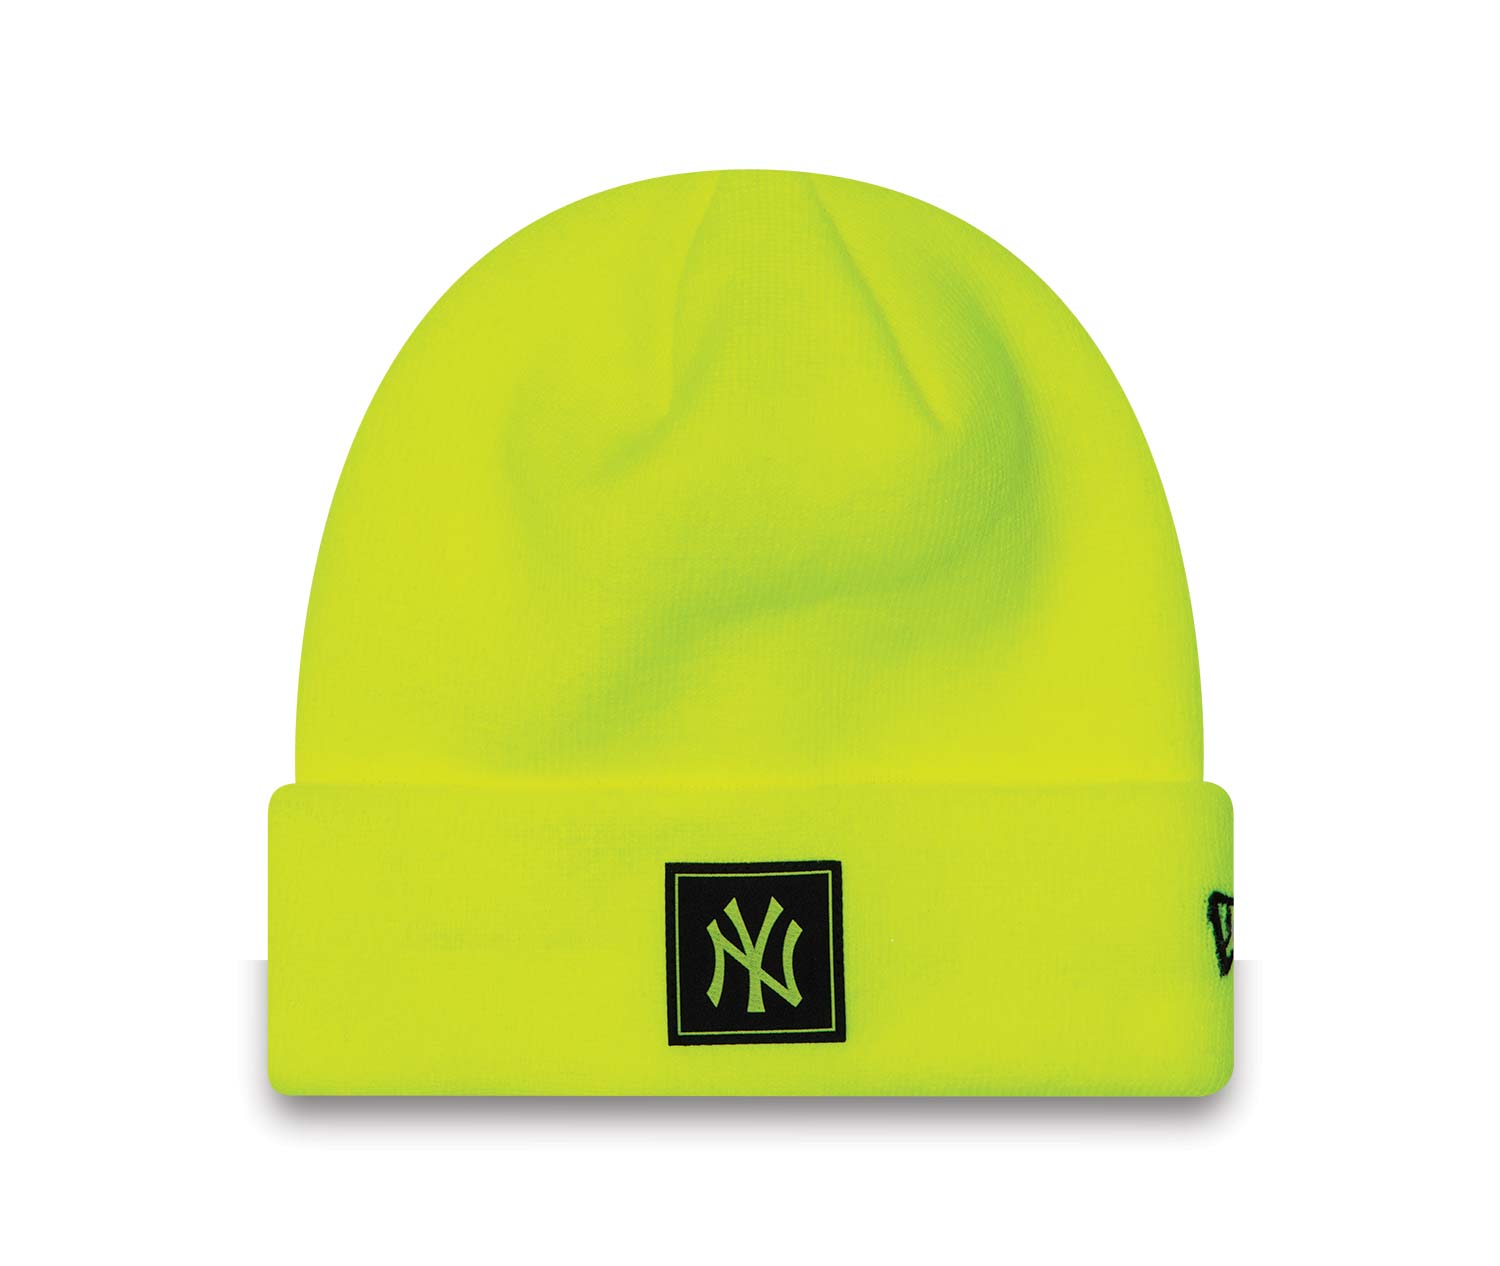 New York Yankees Neon Bright Yellow Beanie Hat